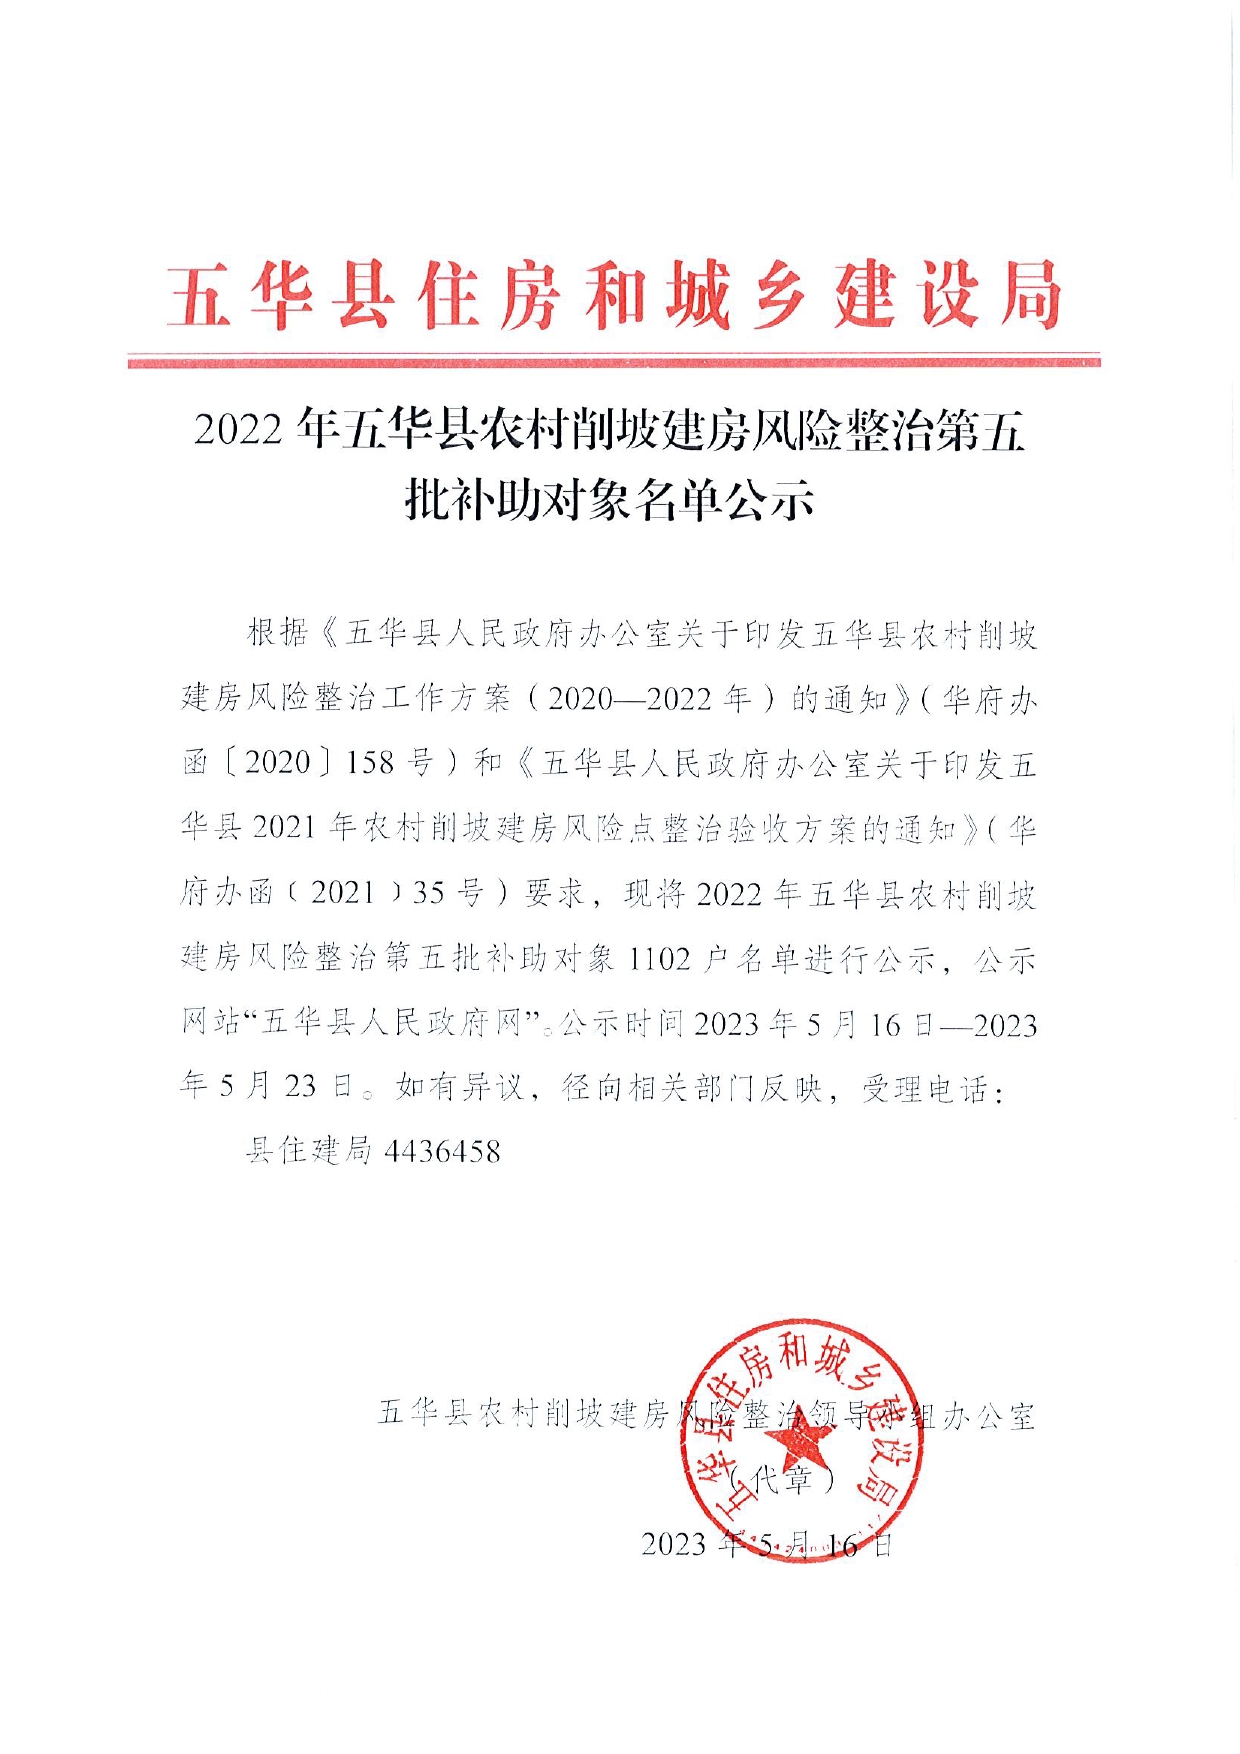 2022年五华县农村削坡建房风险整治第五批补助对象名单公示0000.jpg